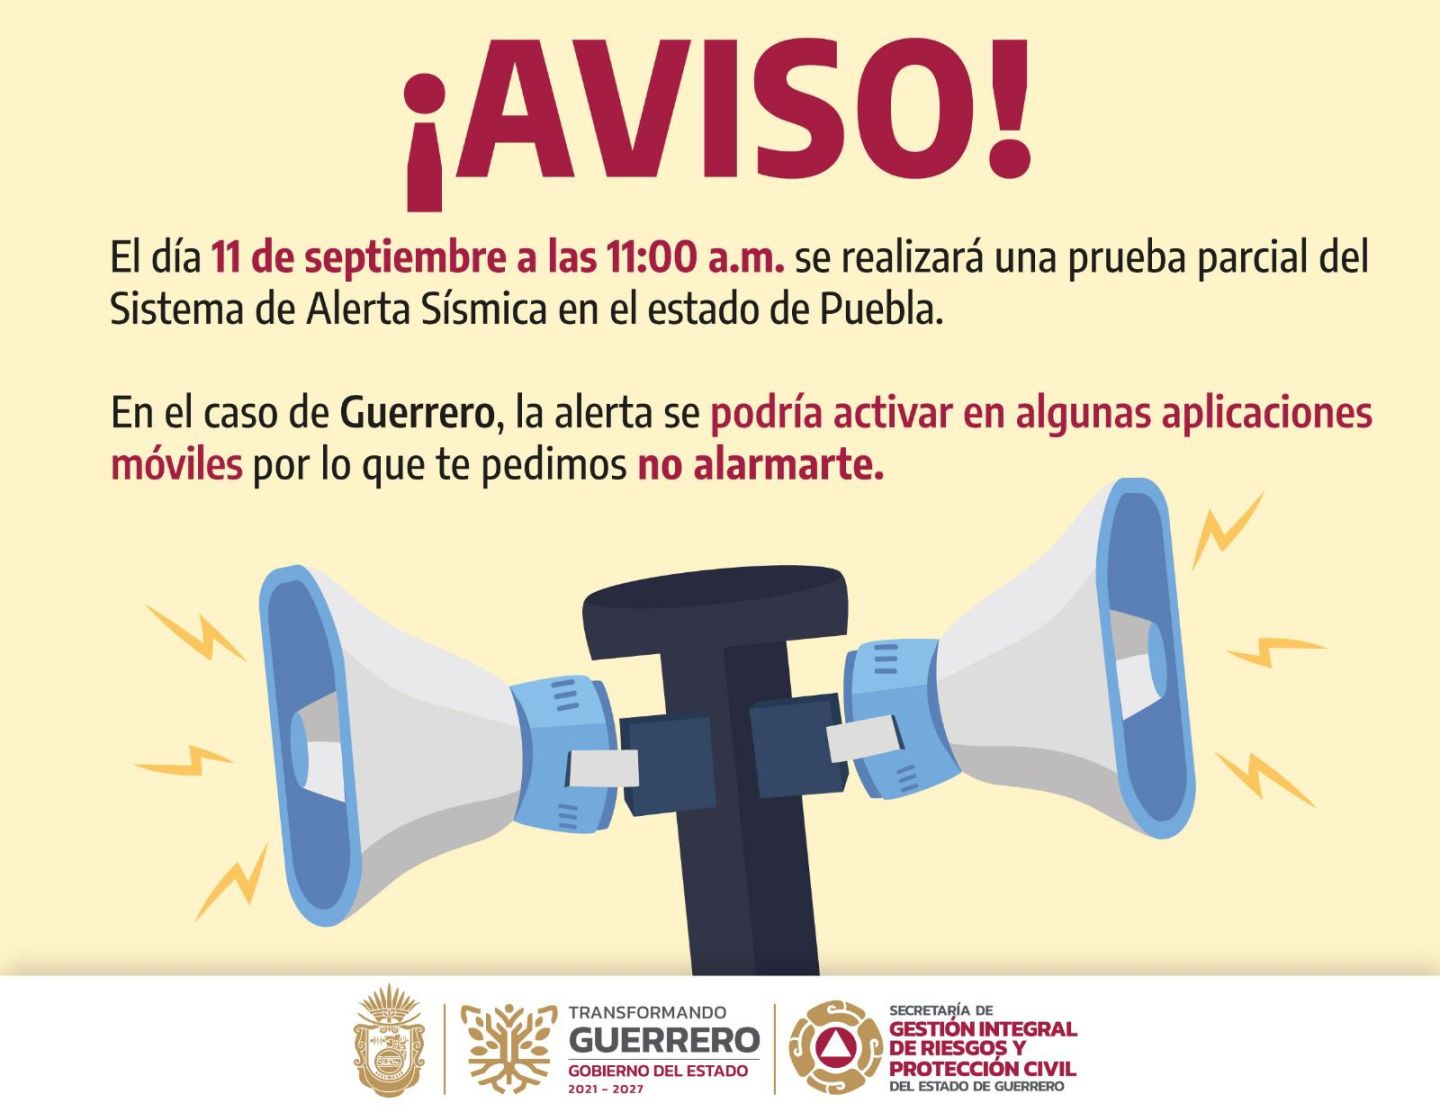 SGIRPCGRO informa que se realizará prueba parcial del sistema de alerta sísmica en el estado de Puebla